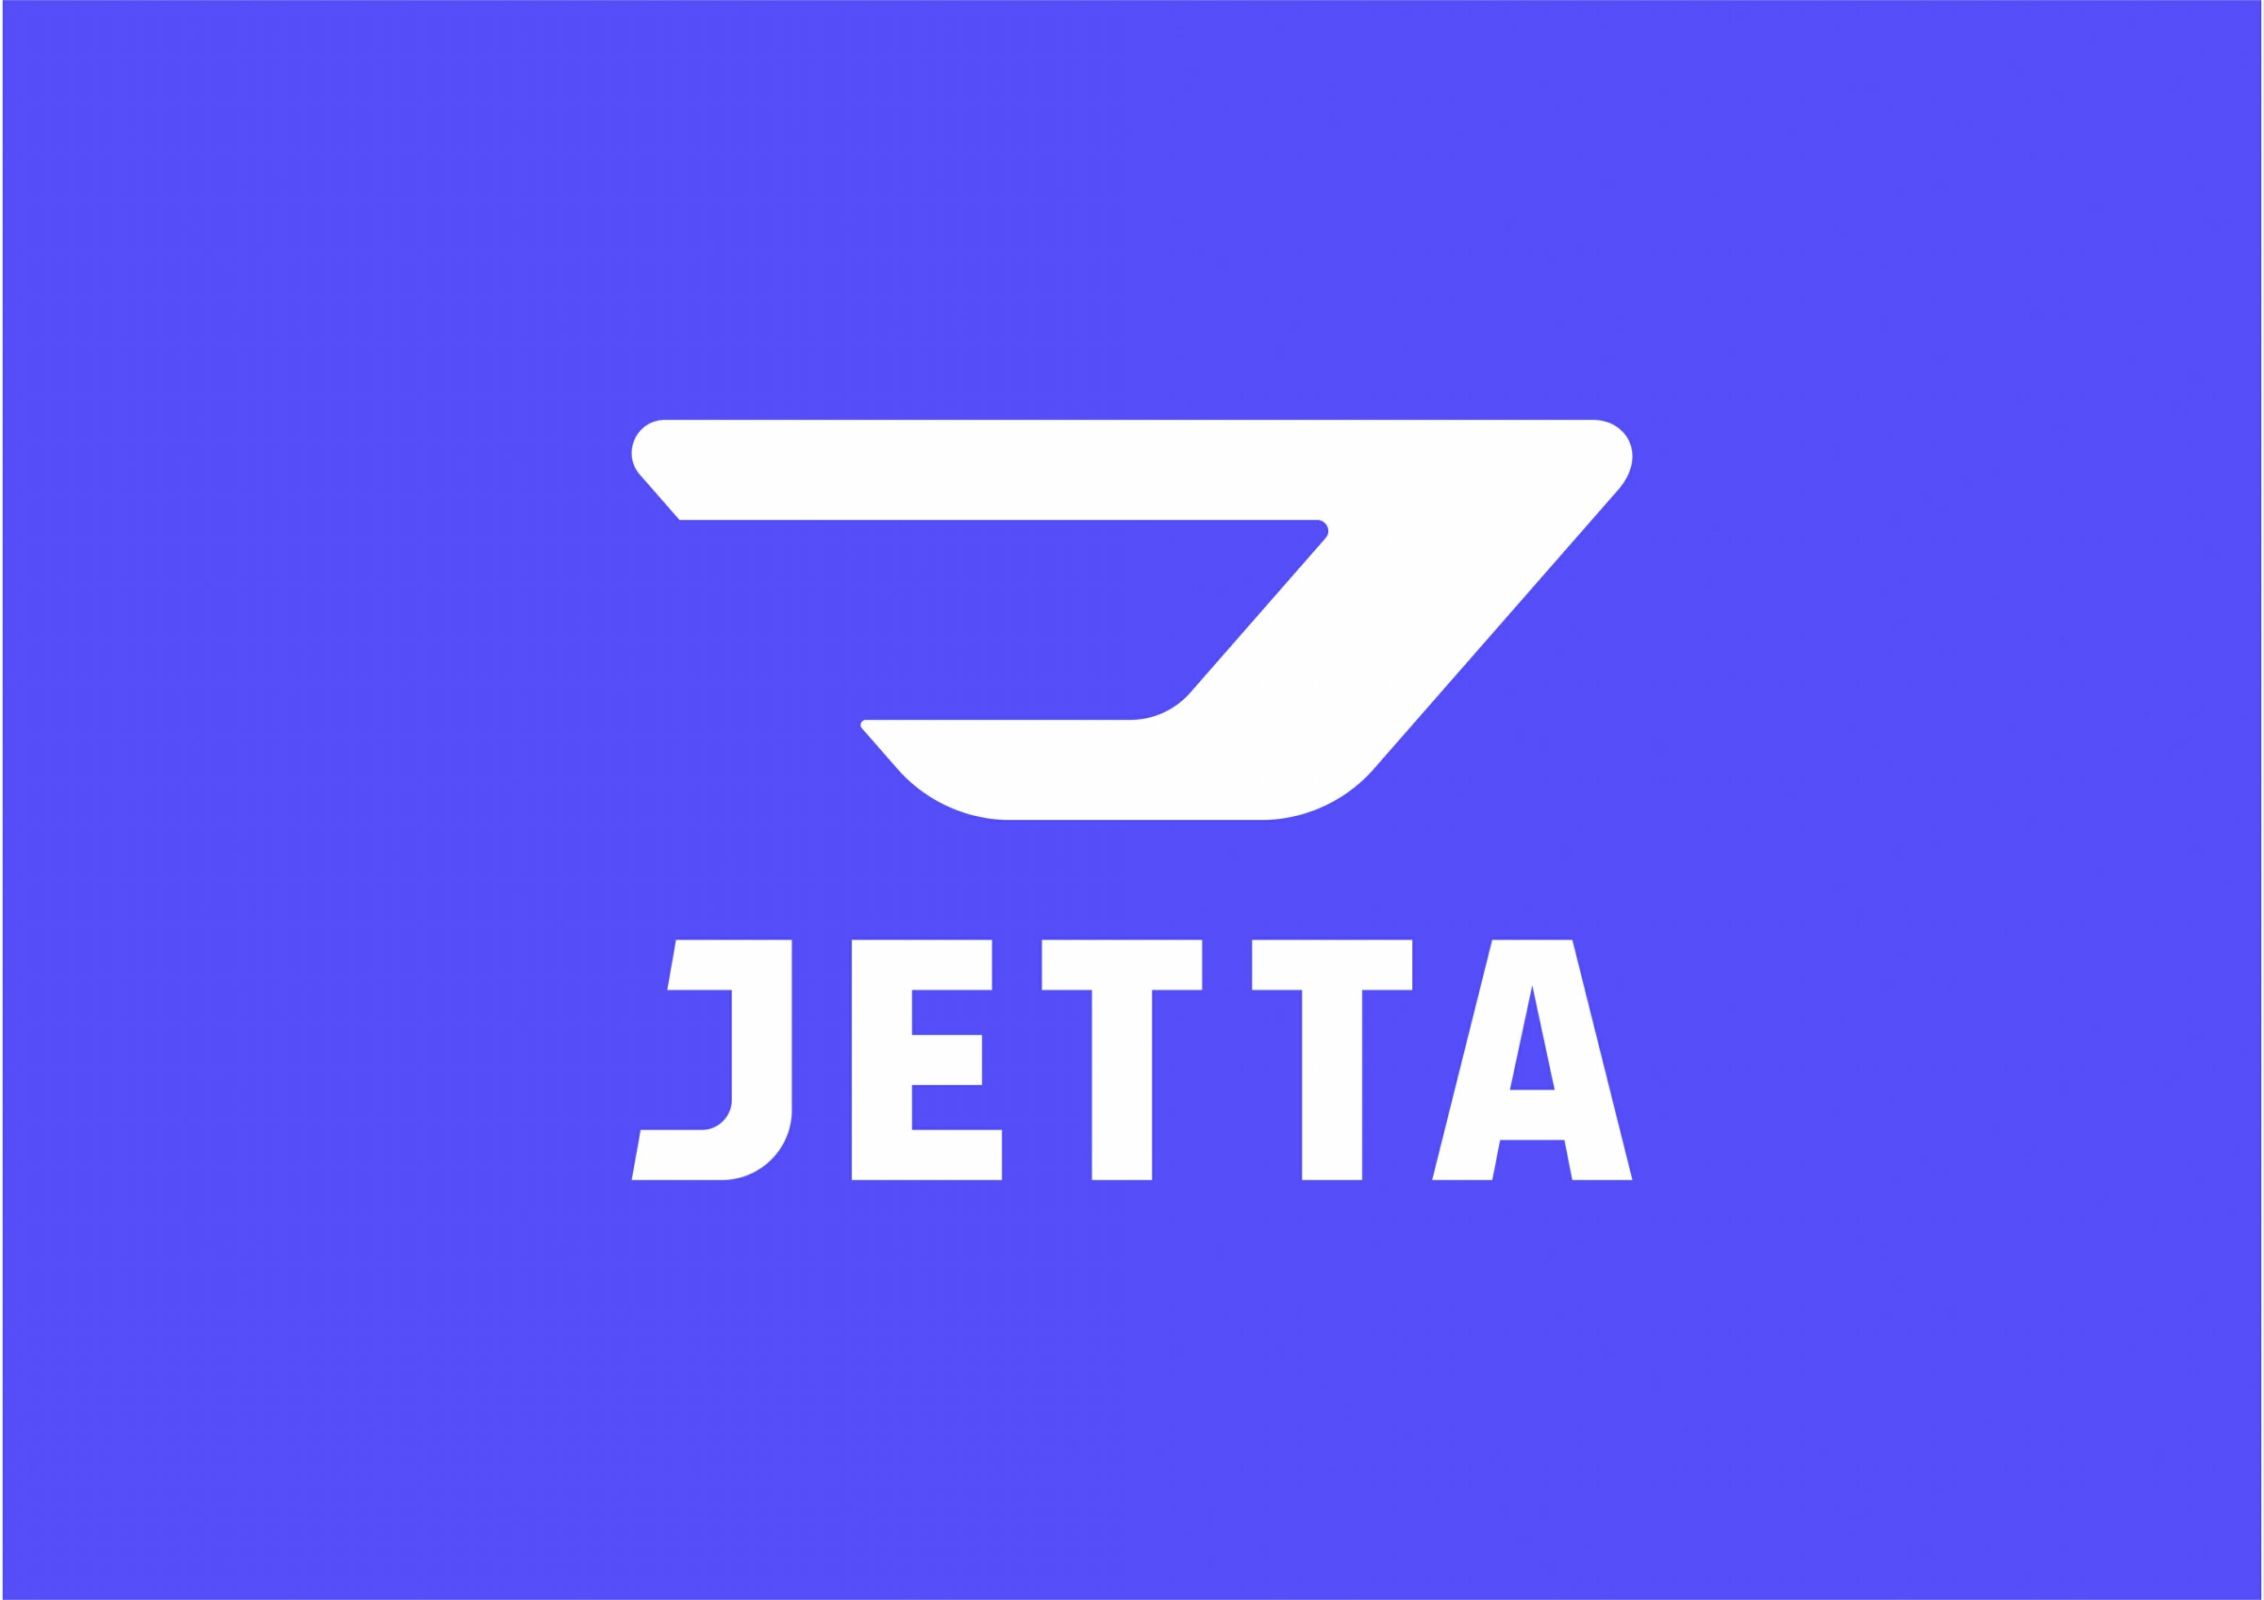 Jetta virou marca da Volkswagen, e estreou durante o Salão do Automóvel de Xangai com um sedã e dois SUVs em gama voltada para o mercado de entrada.